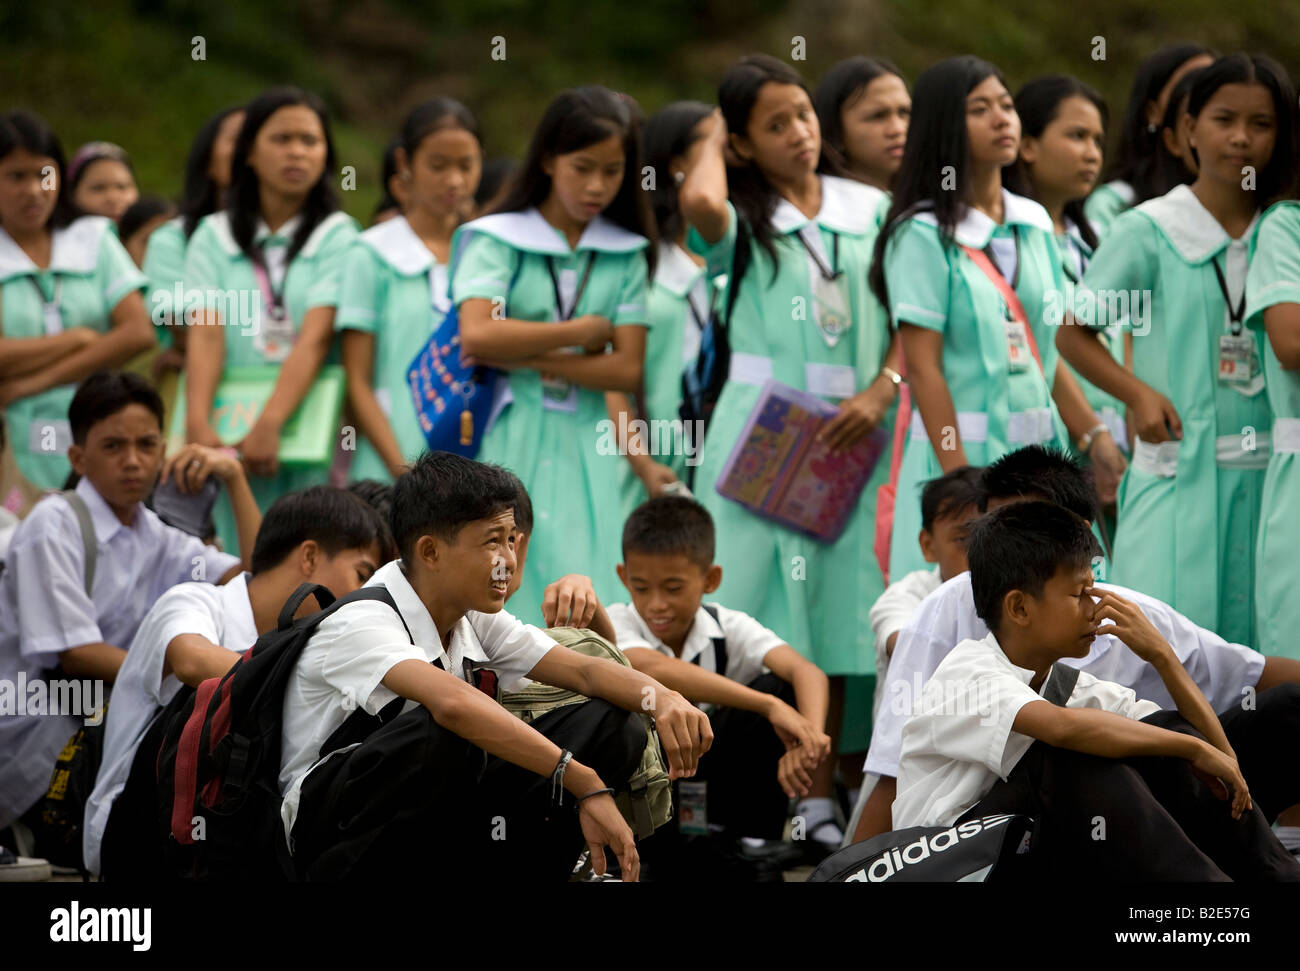 Mansalay katholische SchülerInnen und Schüler sammeln für den Beginn der Schule in Mansalay, Oriental Mindoro, Philippinen. Stockfoto